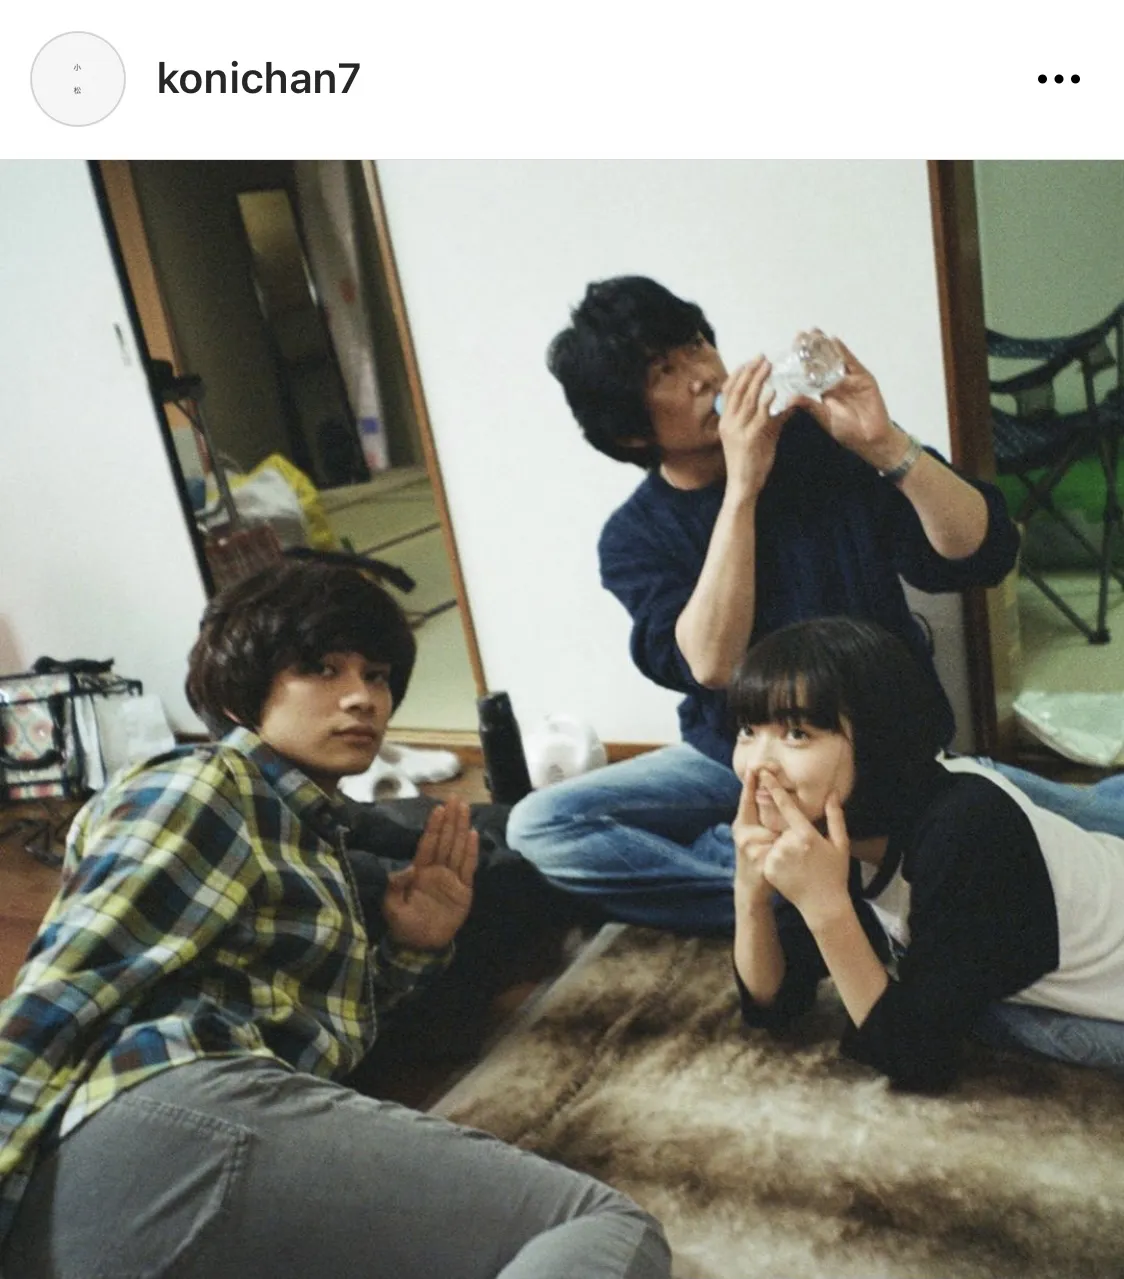 ※小松菜奈の公式Instagram(konichan7)より